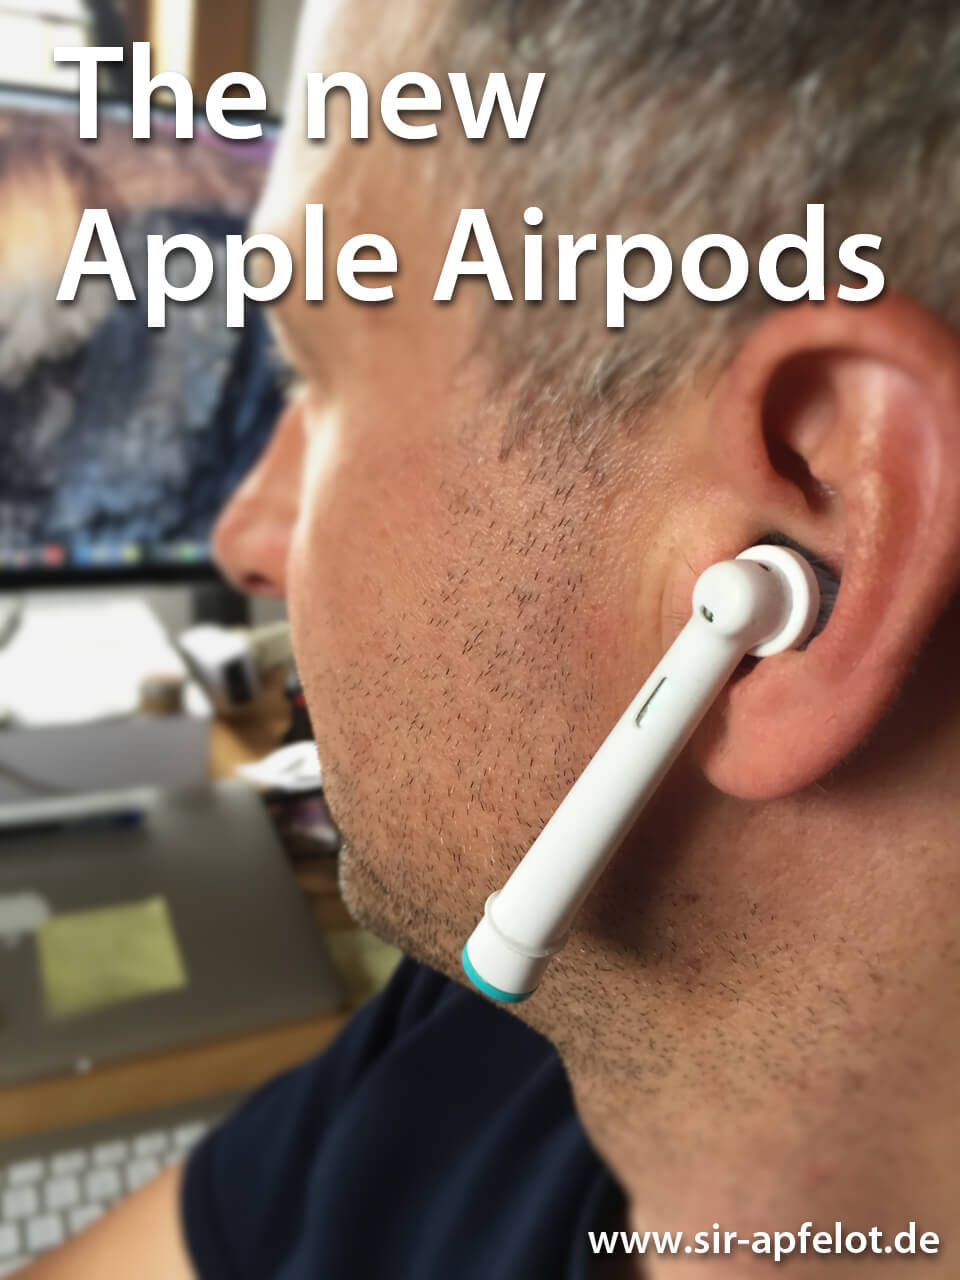 Divertente: le testine dello spazzolino da denti sostituiscono gli Apple AirPods